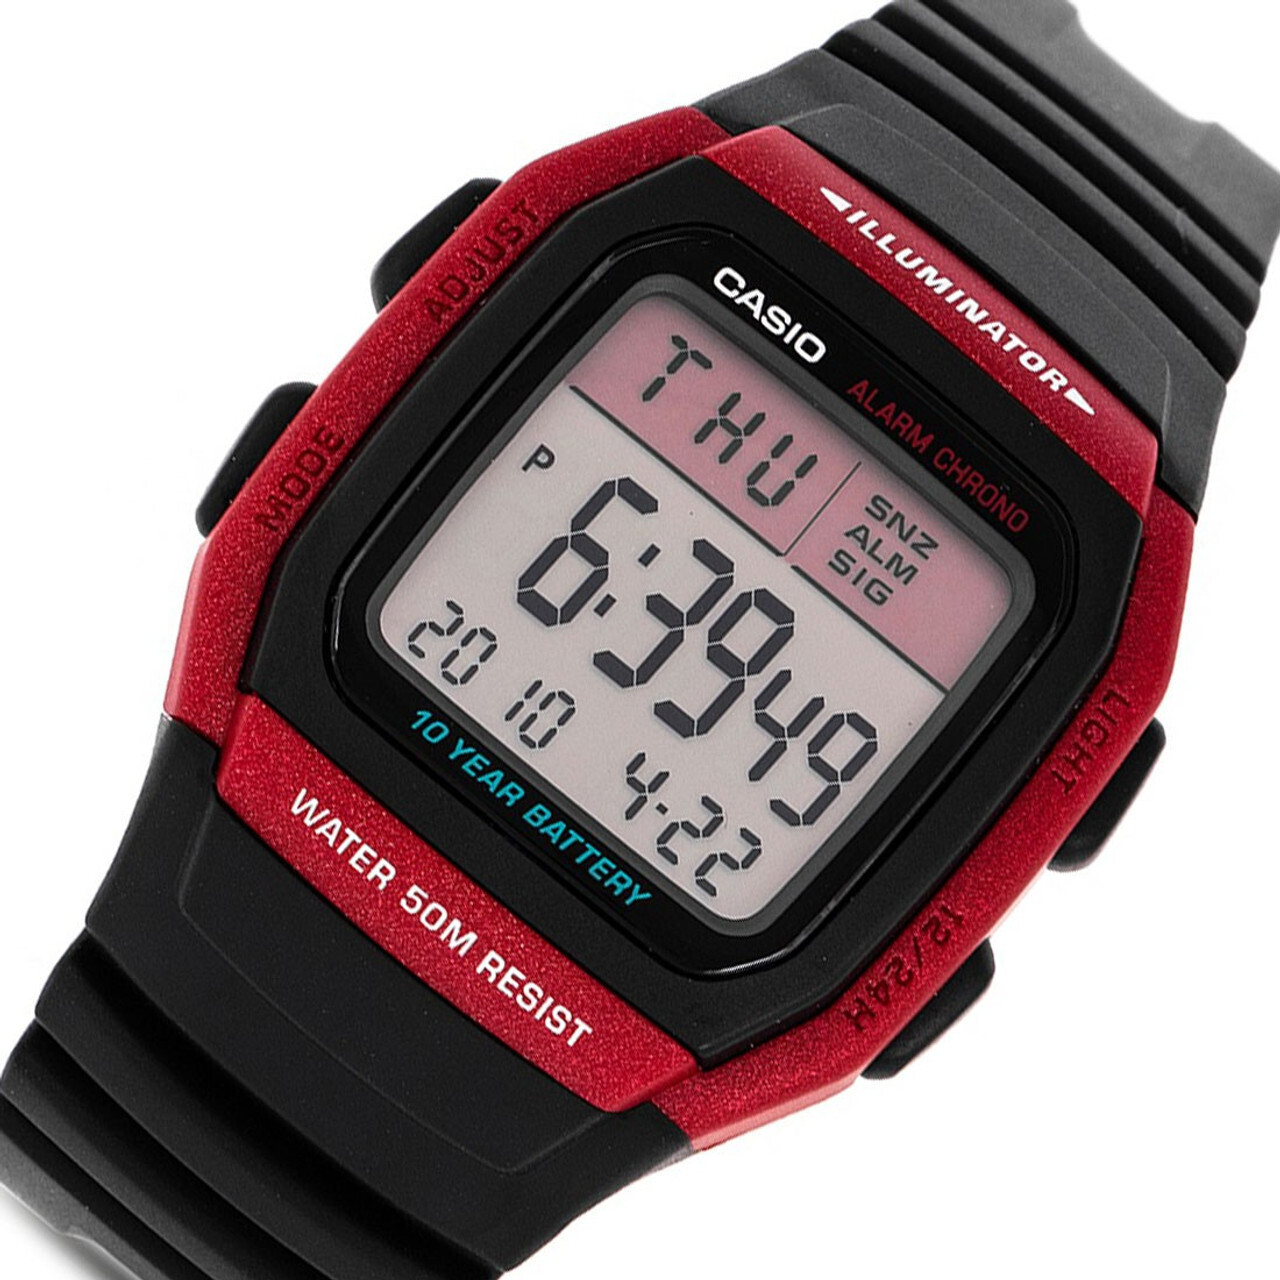 ​Reloj Casio digital W-96h-4av digital sport alarma 10 años batería Crono 50m Water Resist